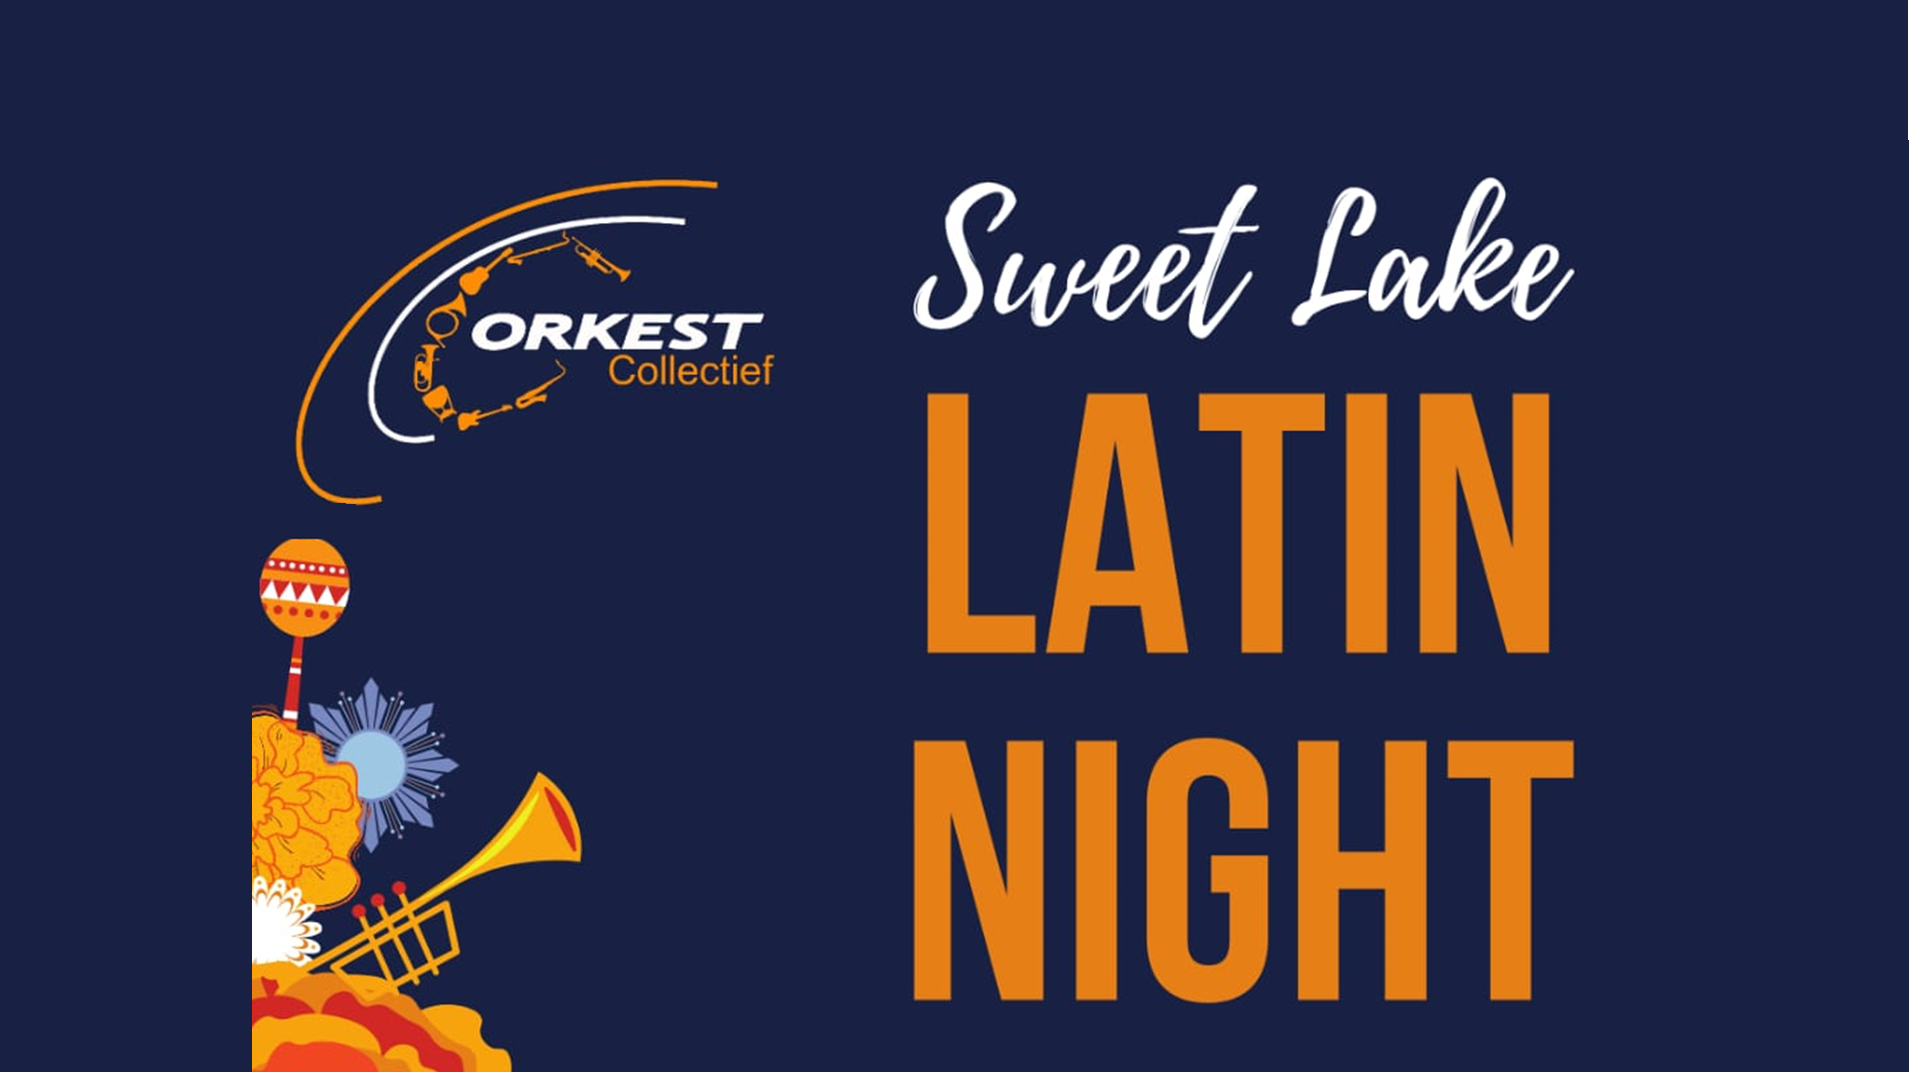 Sweet Lake Latin Night